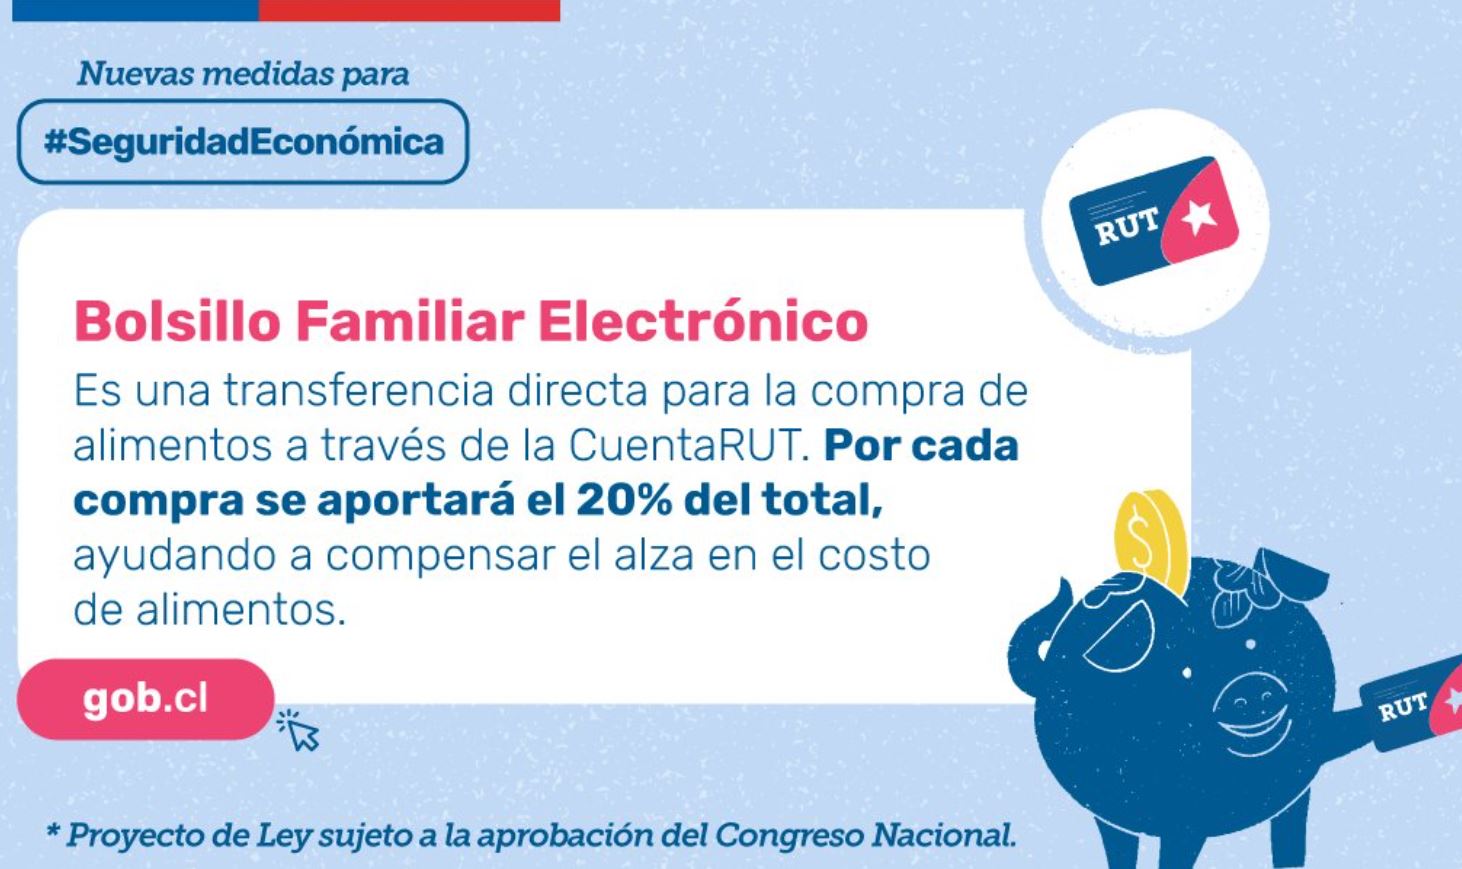 Información sobre Bolsillo Familiar Electrónico.